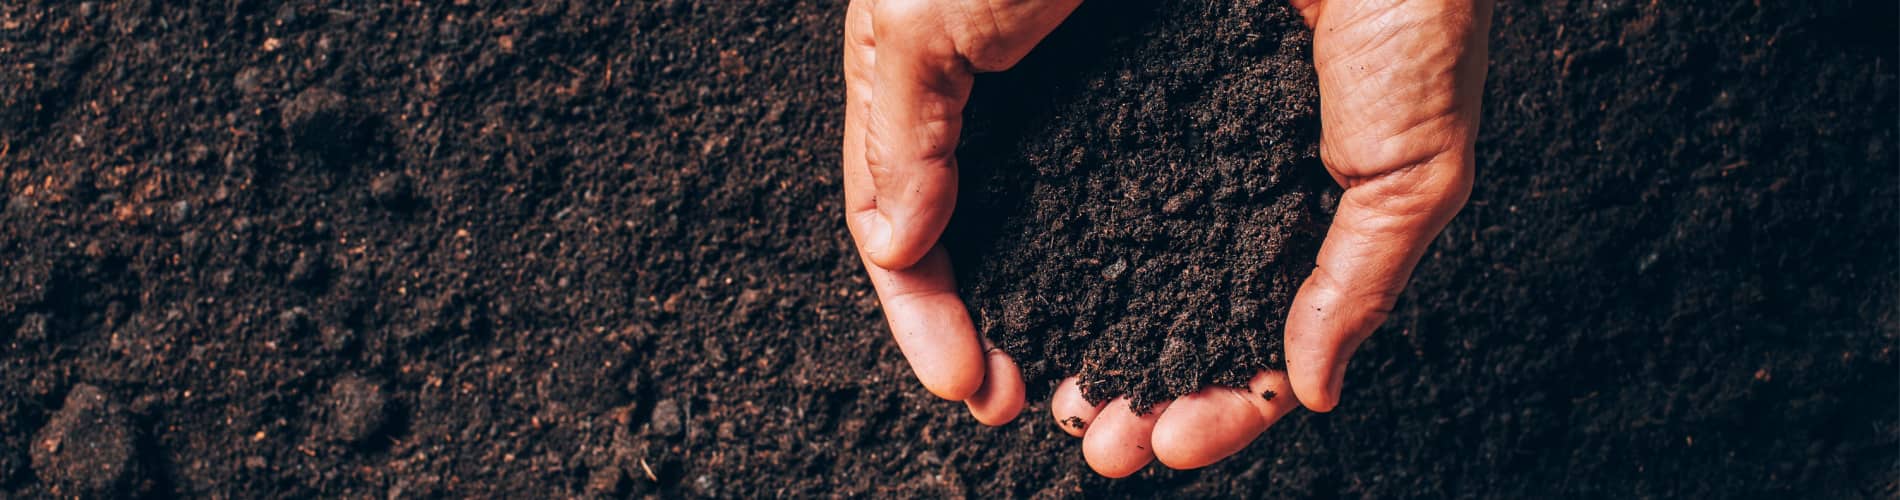 Bodenanalyse: Hände mit Erde